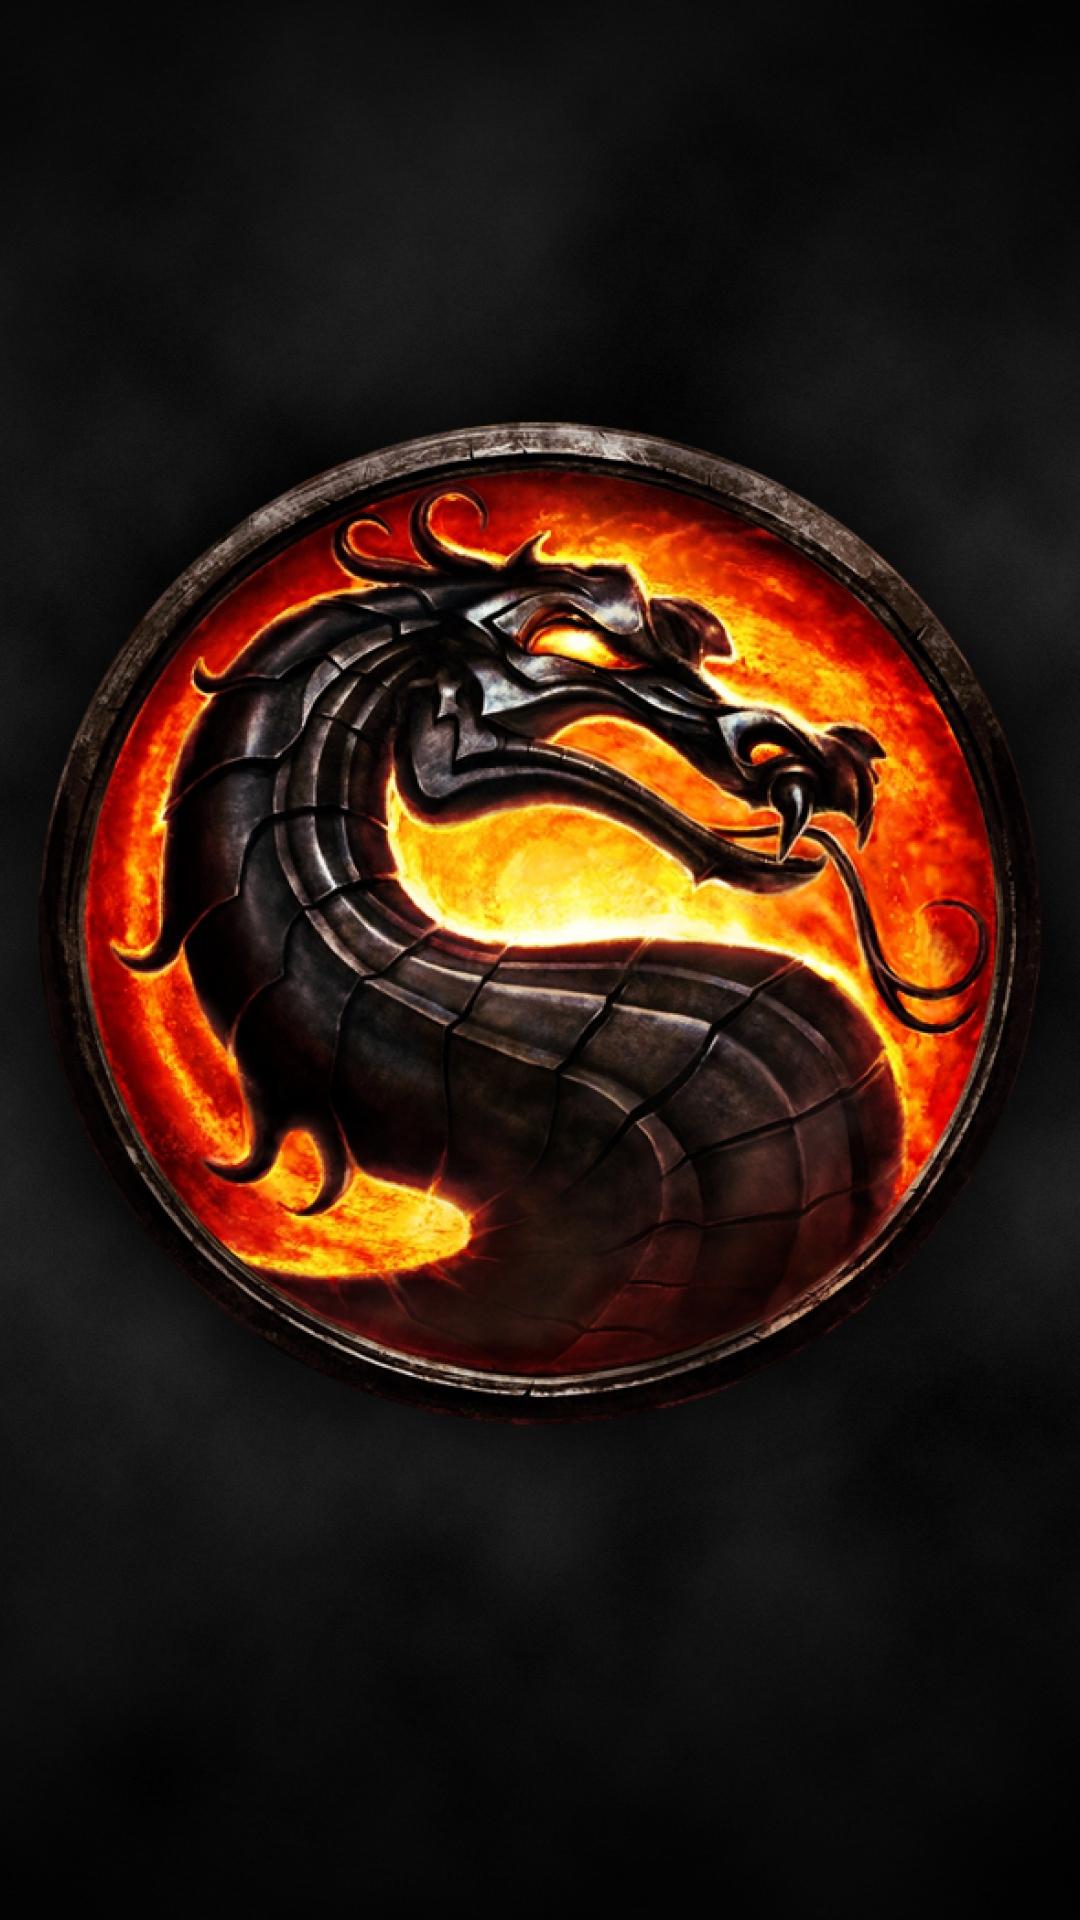 Mortal Kombat logo HTC One M9 wallpaper